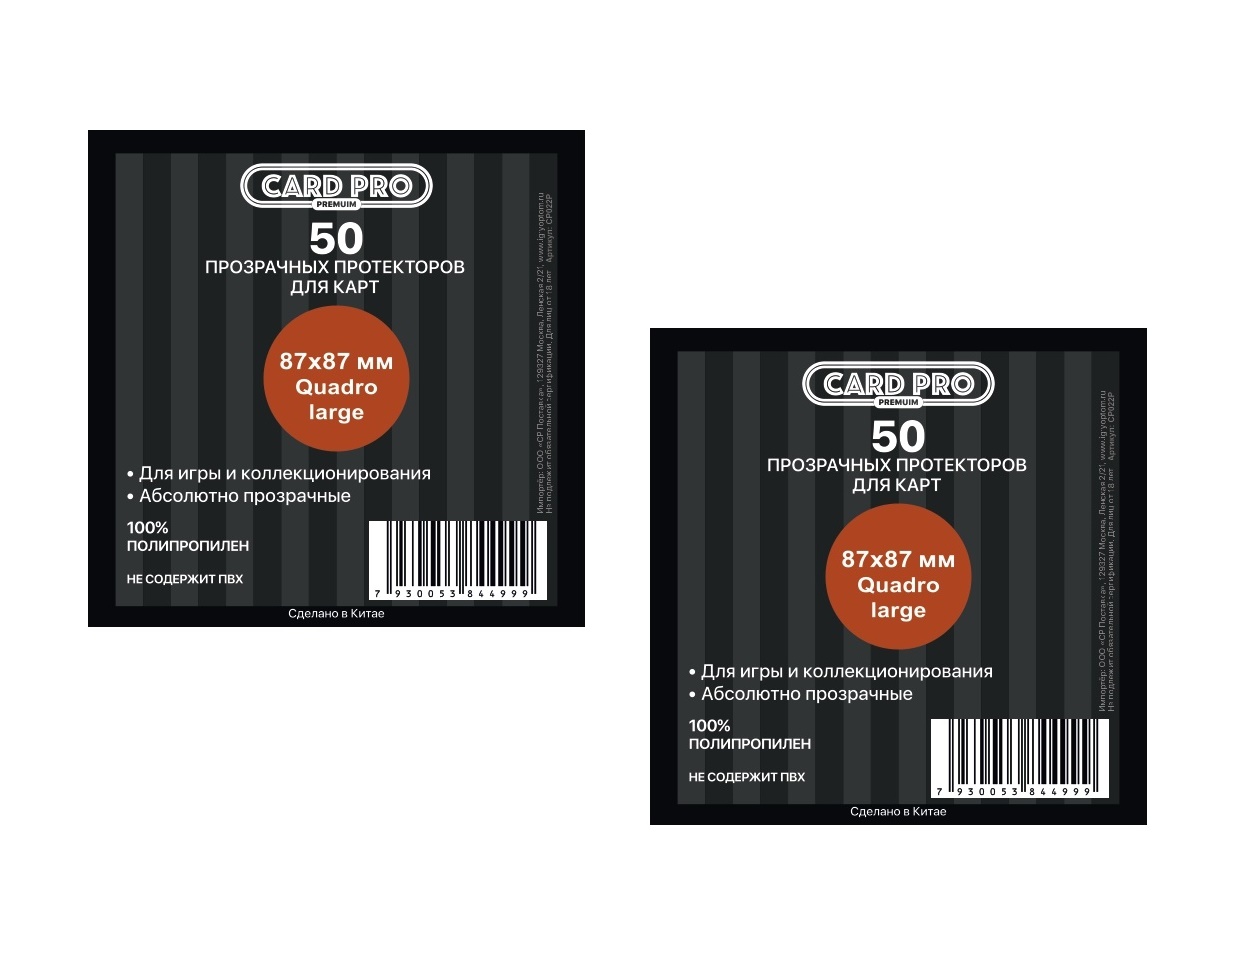 Протекторы Card-Pro PREMIUM Quadro large для настольных игр 50 шт. 87x87 мм. 2 пачки протекторы card pro euro для настольных игр 59x92 мм 2 пачки